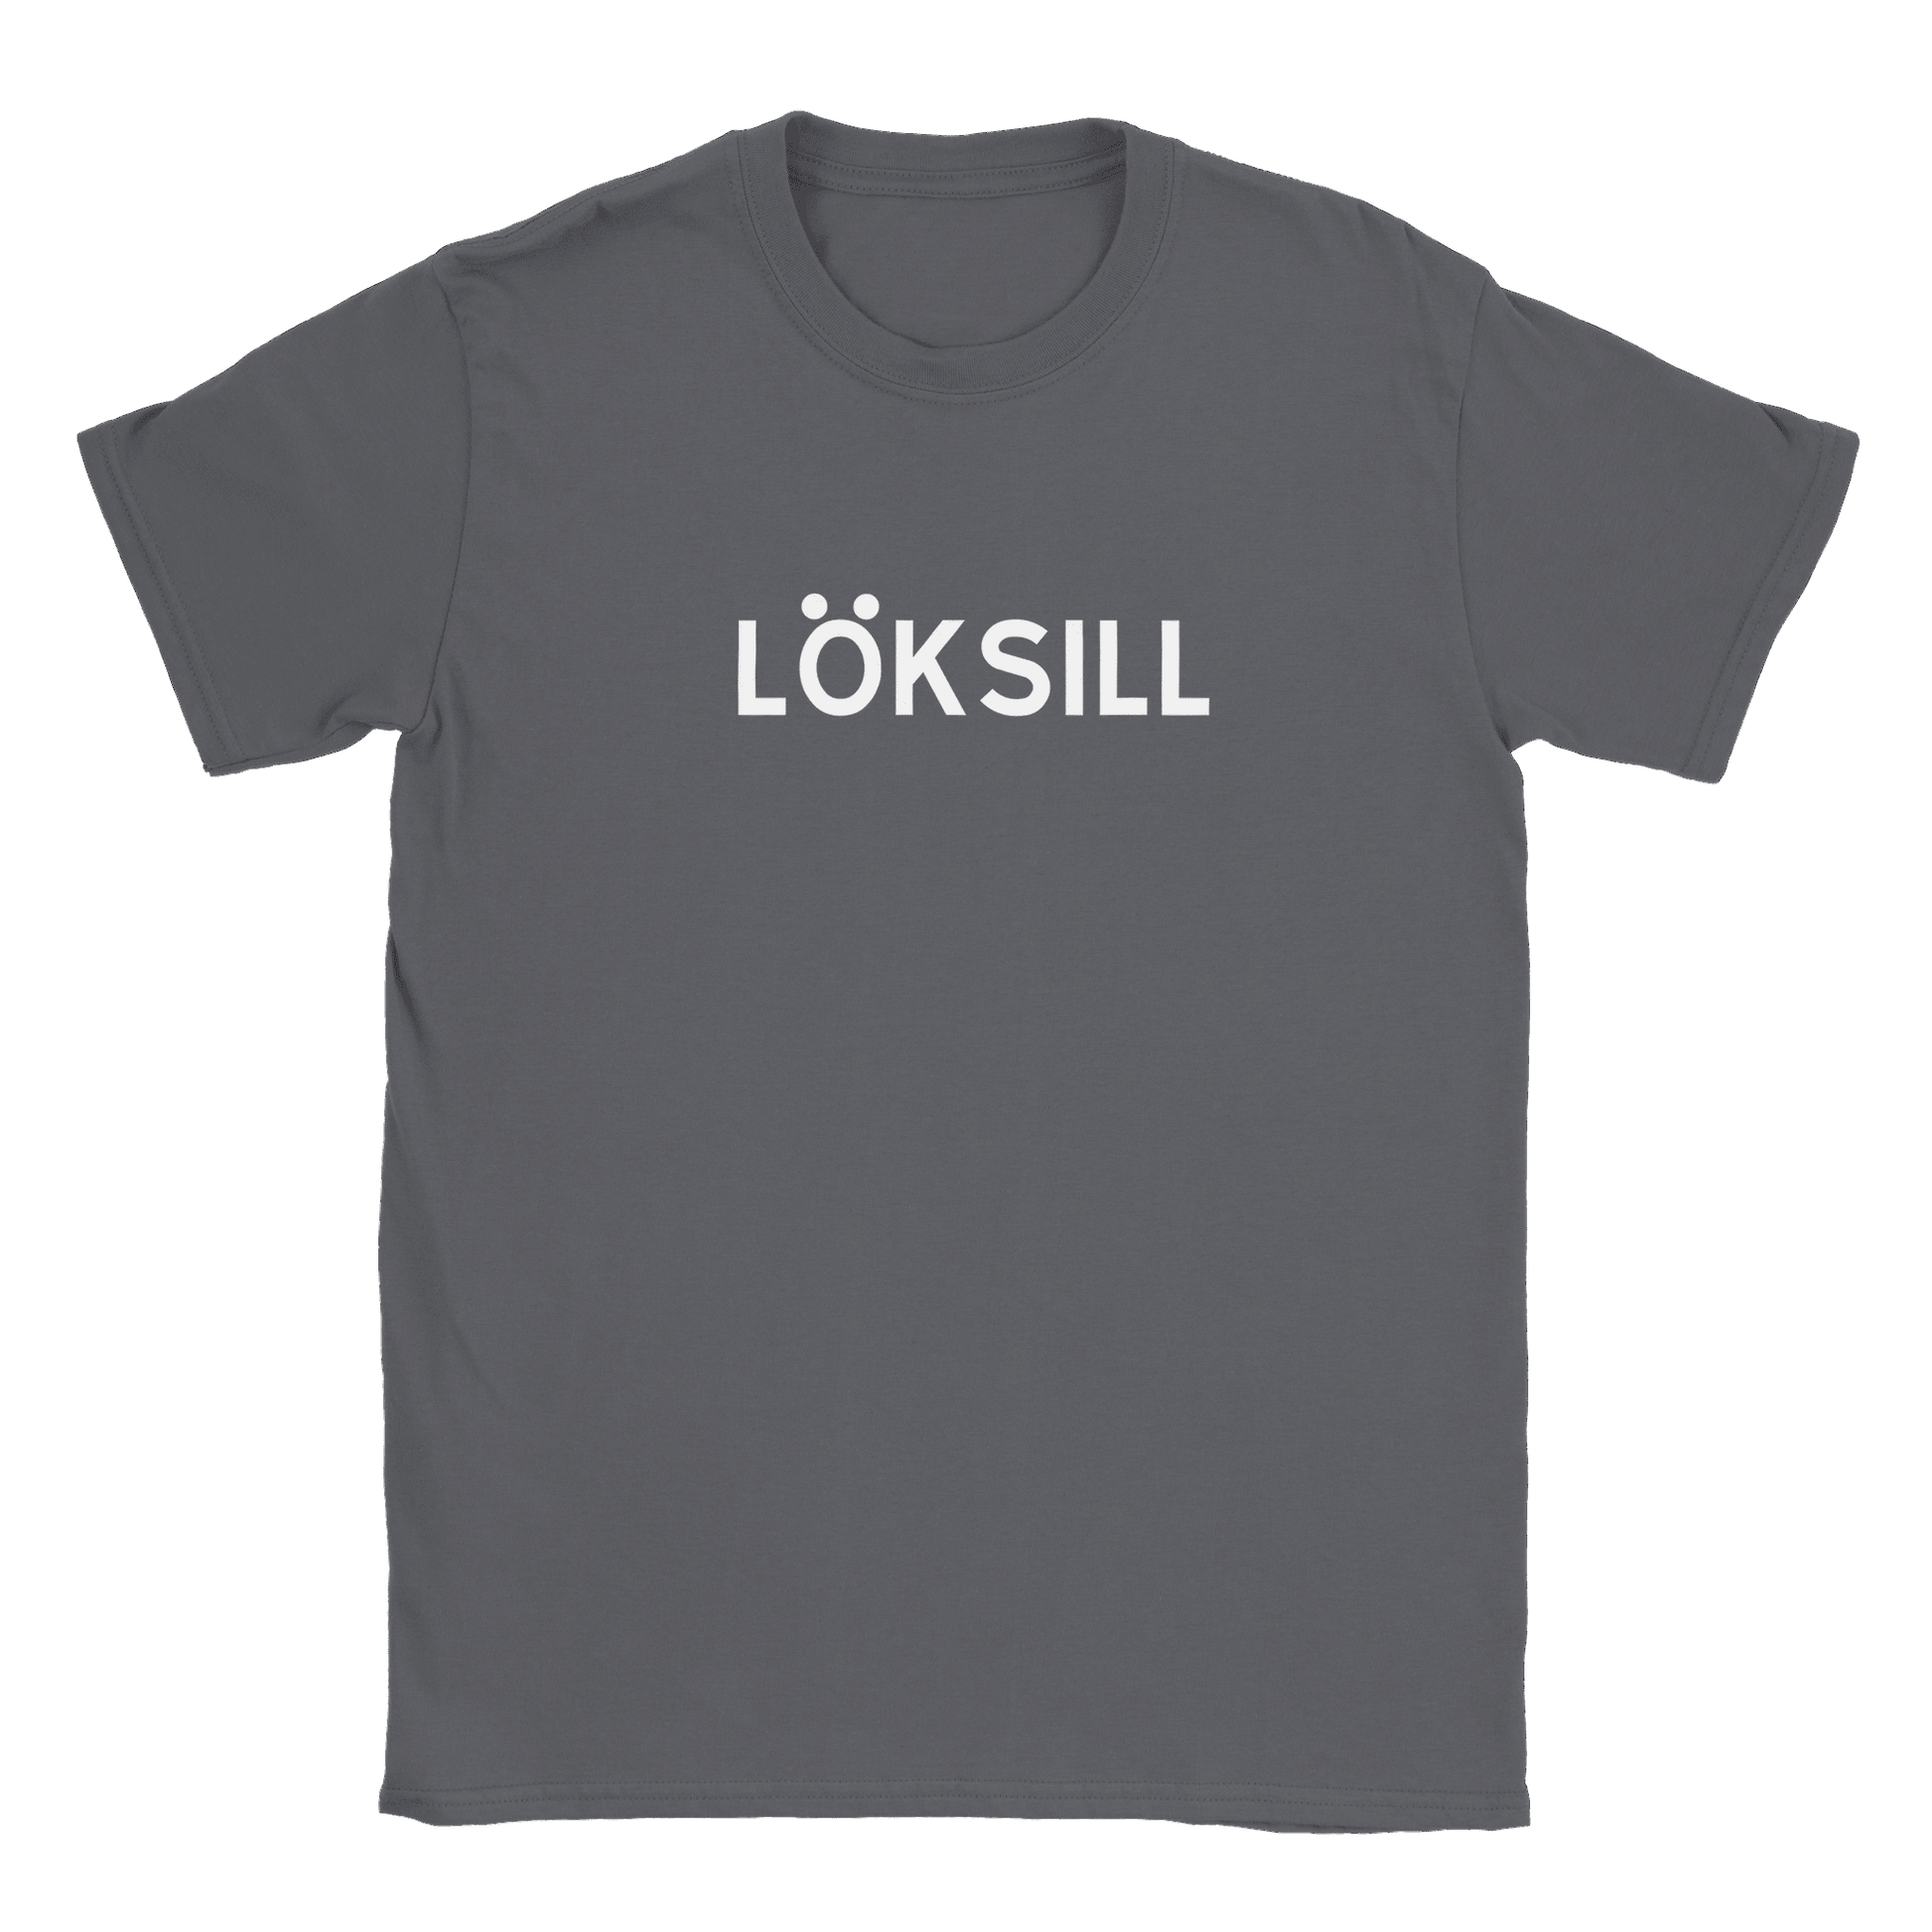 Löksill - T-shirt Charcoal